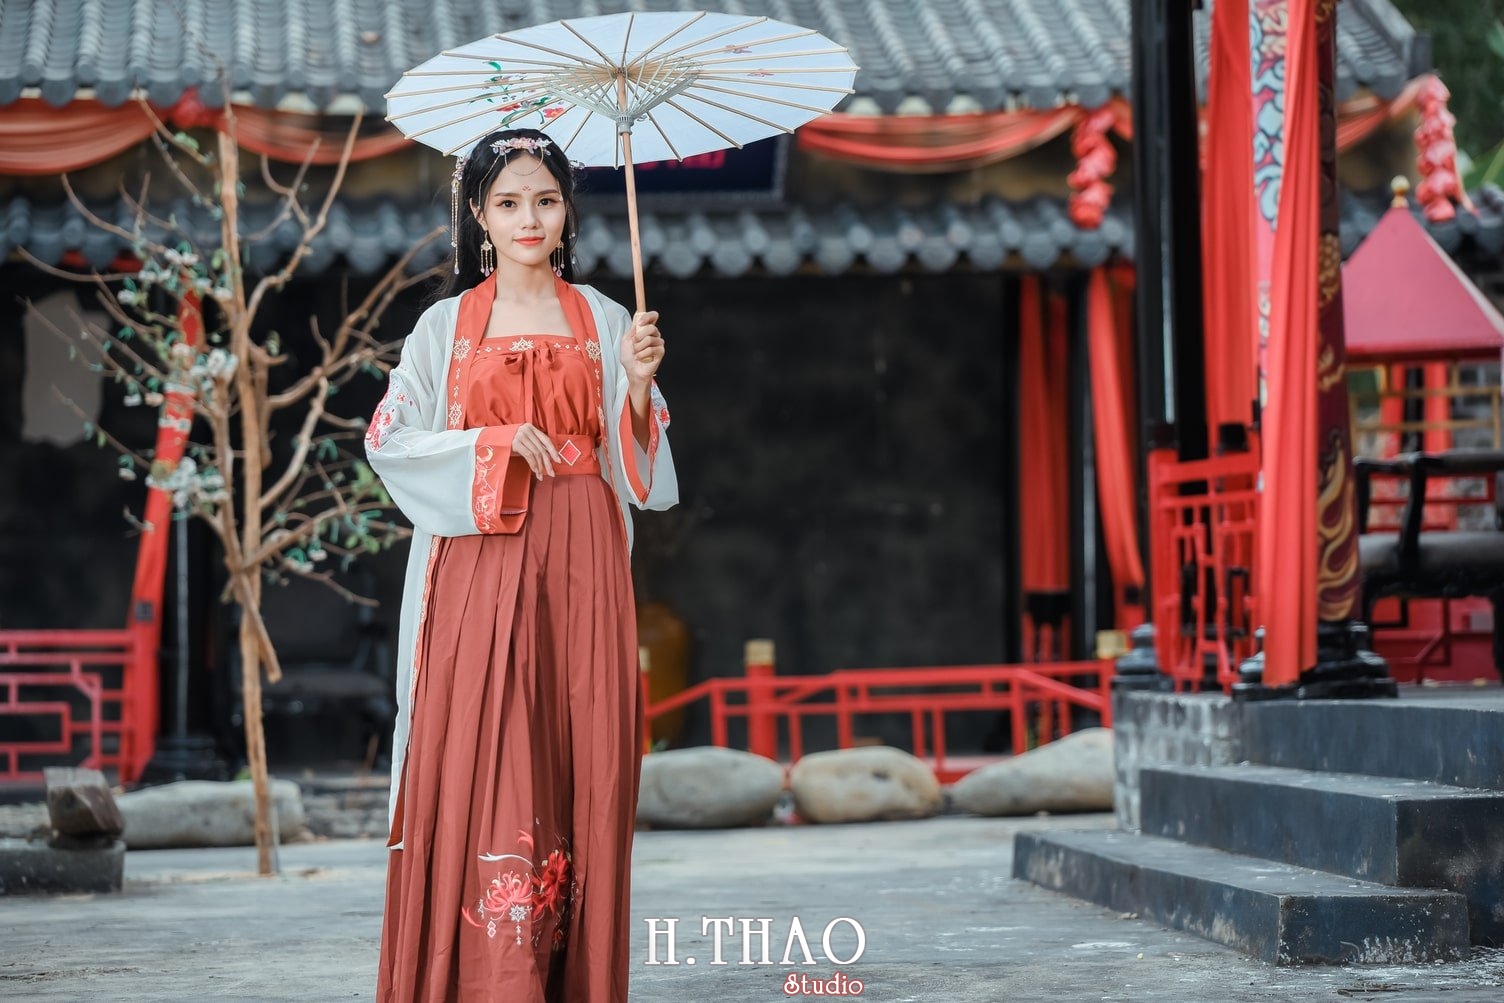 Anh tieu long nu 12 - Album ảnh chụp cổ trang cá nhân theo concept đời đường - HThao Studio